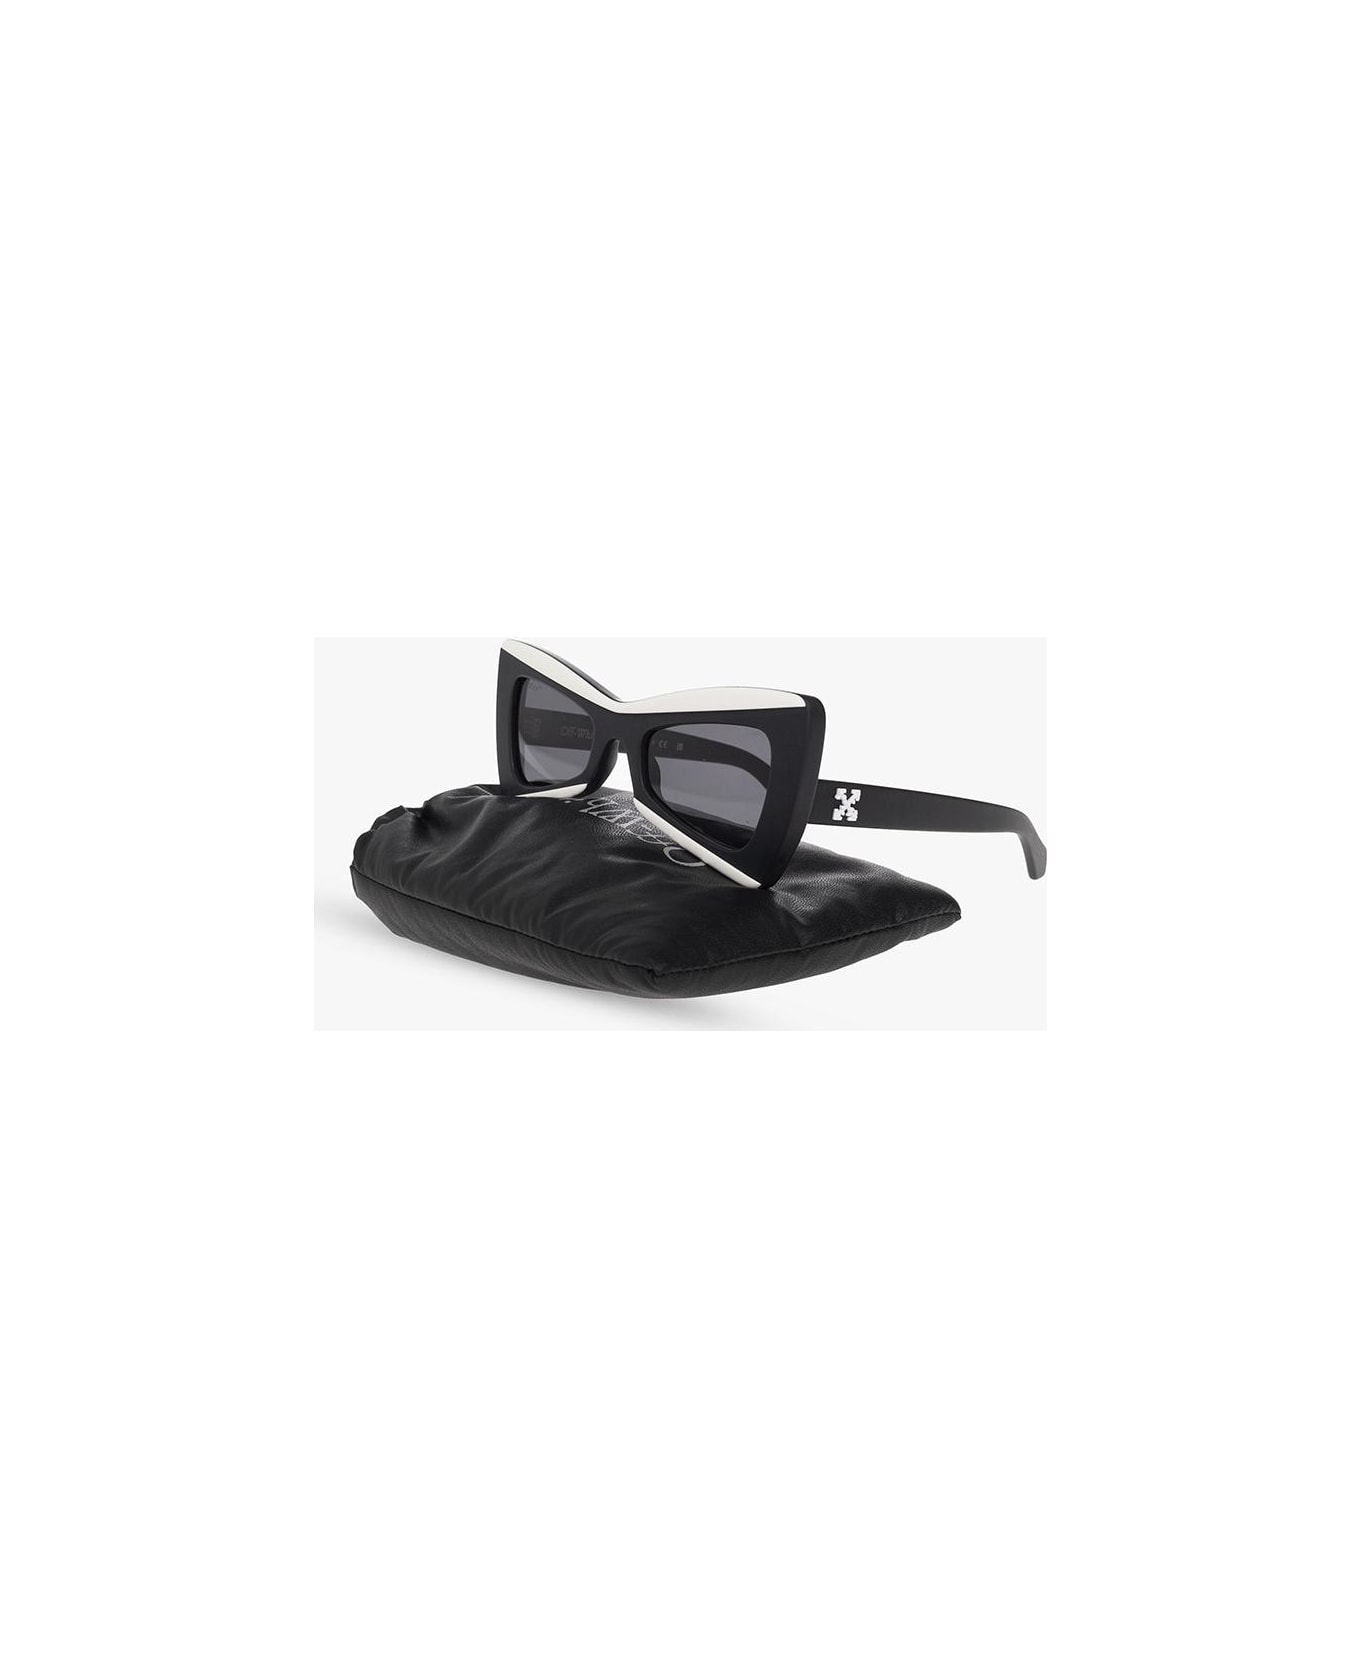 Off-White 'nashville' Sunglasses - Black/dark grey